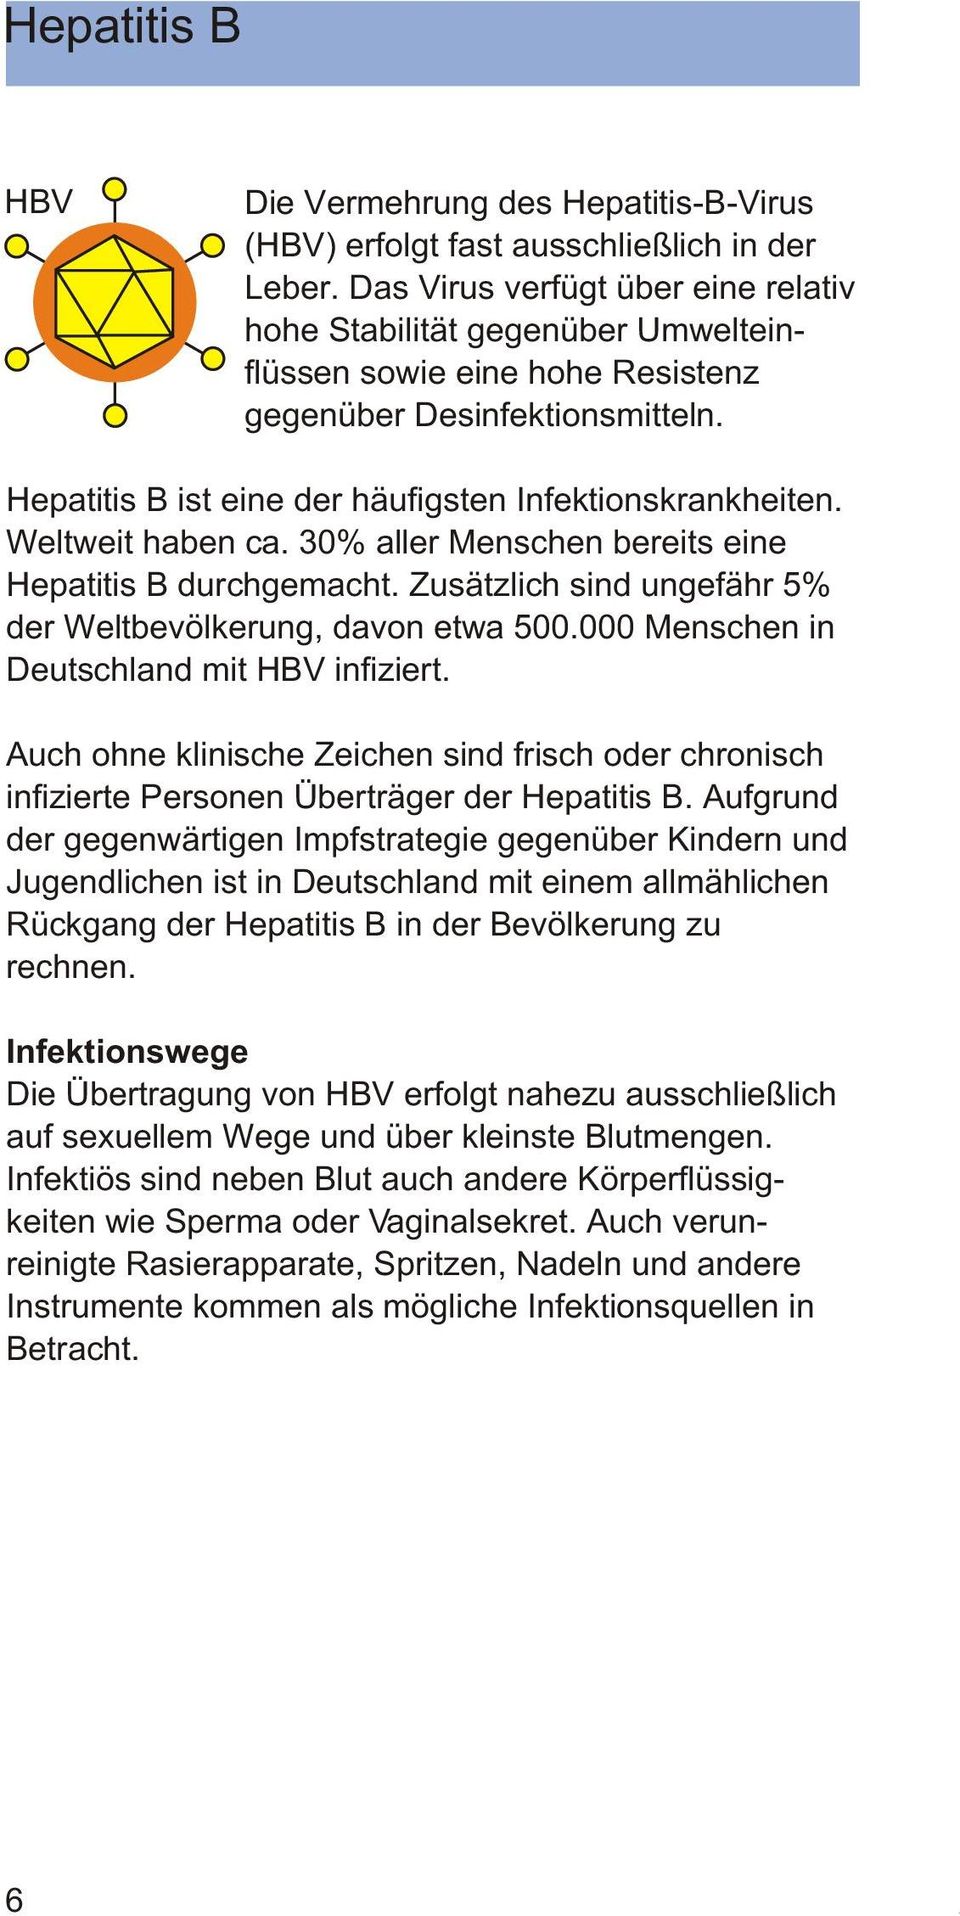 Weltweit haben ca. 30% aller Menschen bereits eine Hepatitis B durchgemacht. Zusätzlich sind ungefähr 5% der Weltbevölkerung, davon etwa 500.000 Menschen in Deutschland mit HBV infiziert.